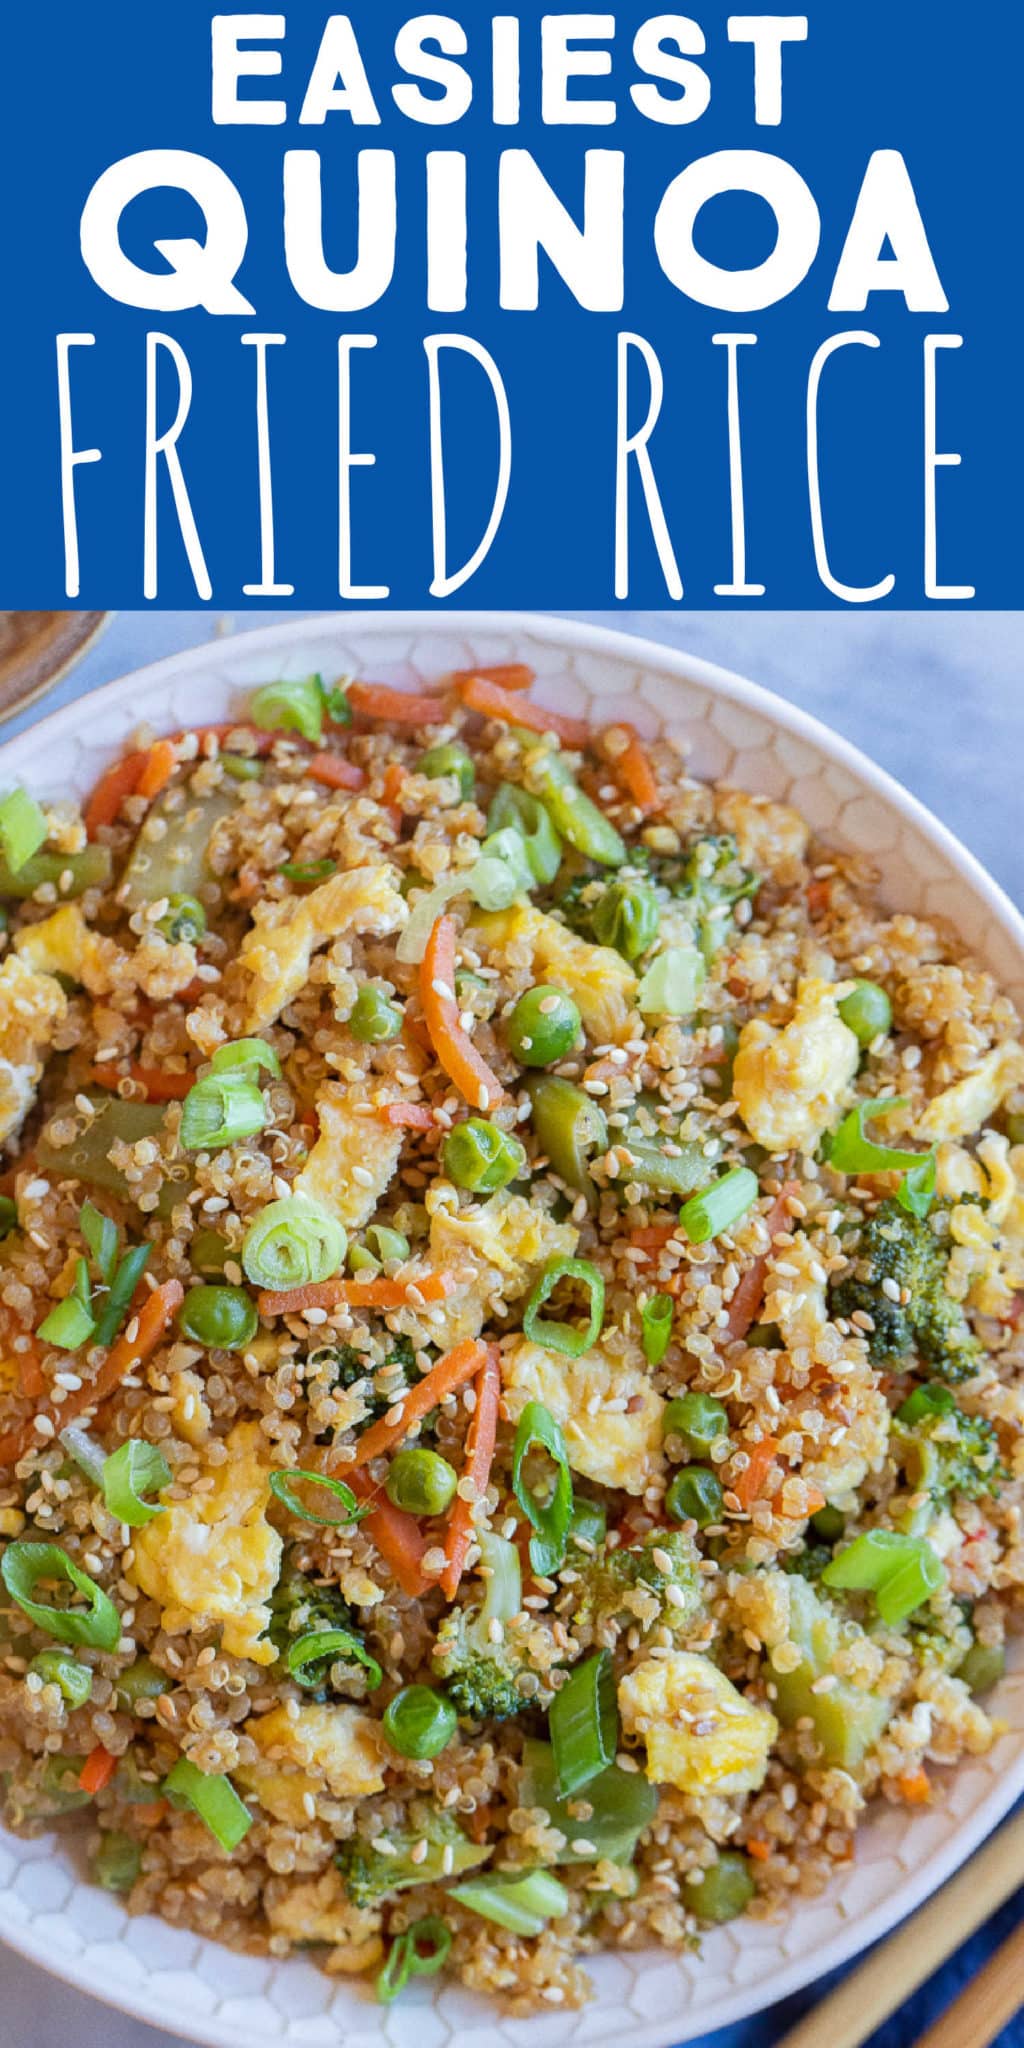 Easy Quinoa Fried Rice Recipe - She Likes Food